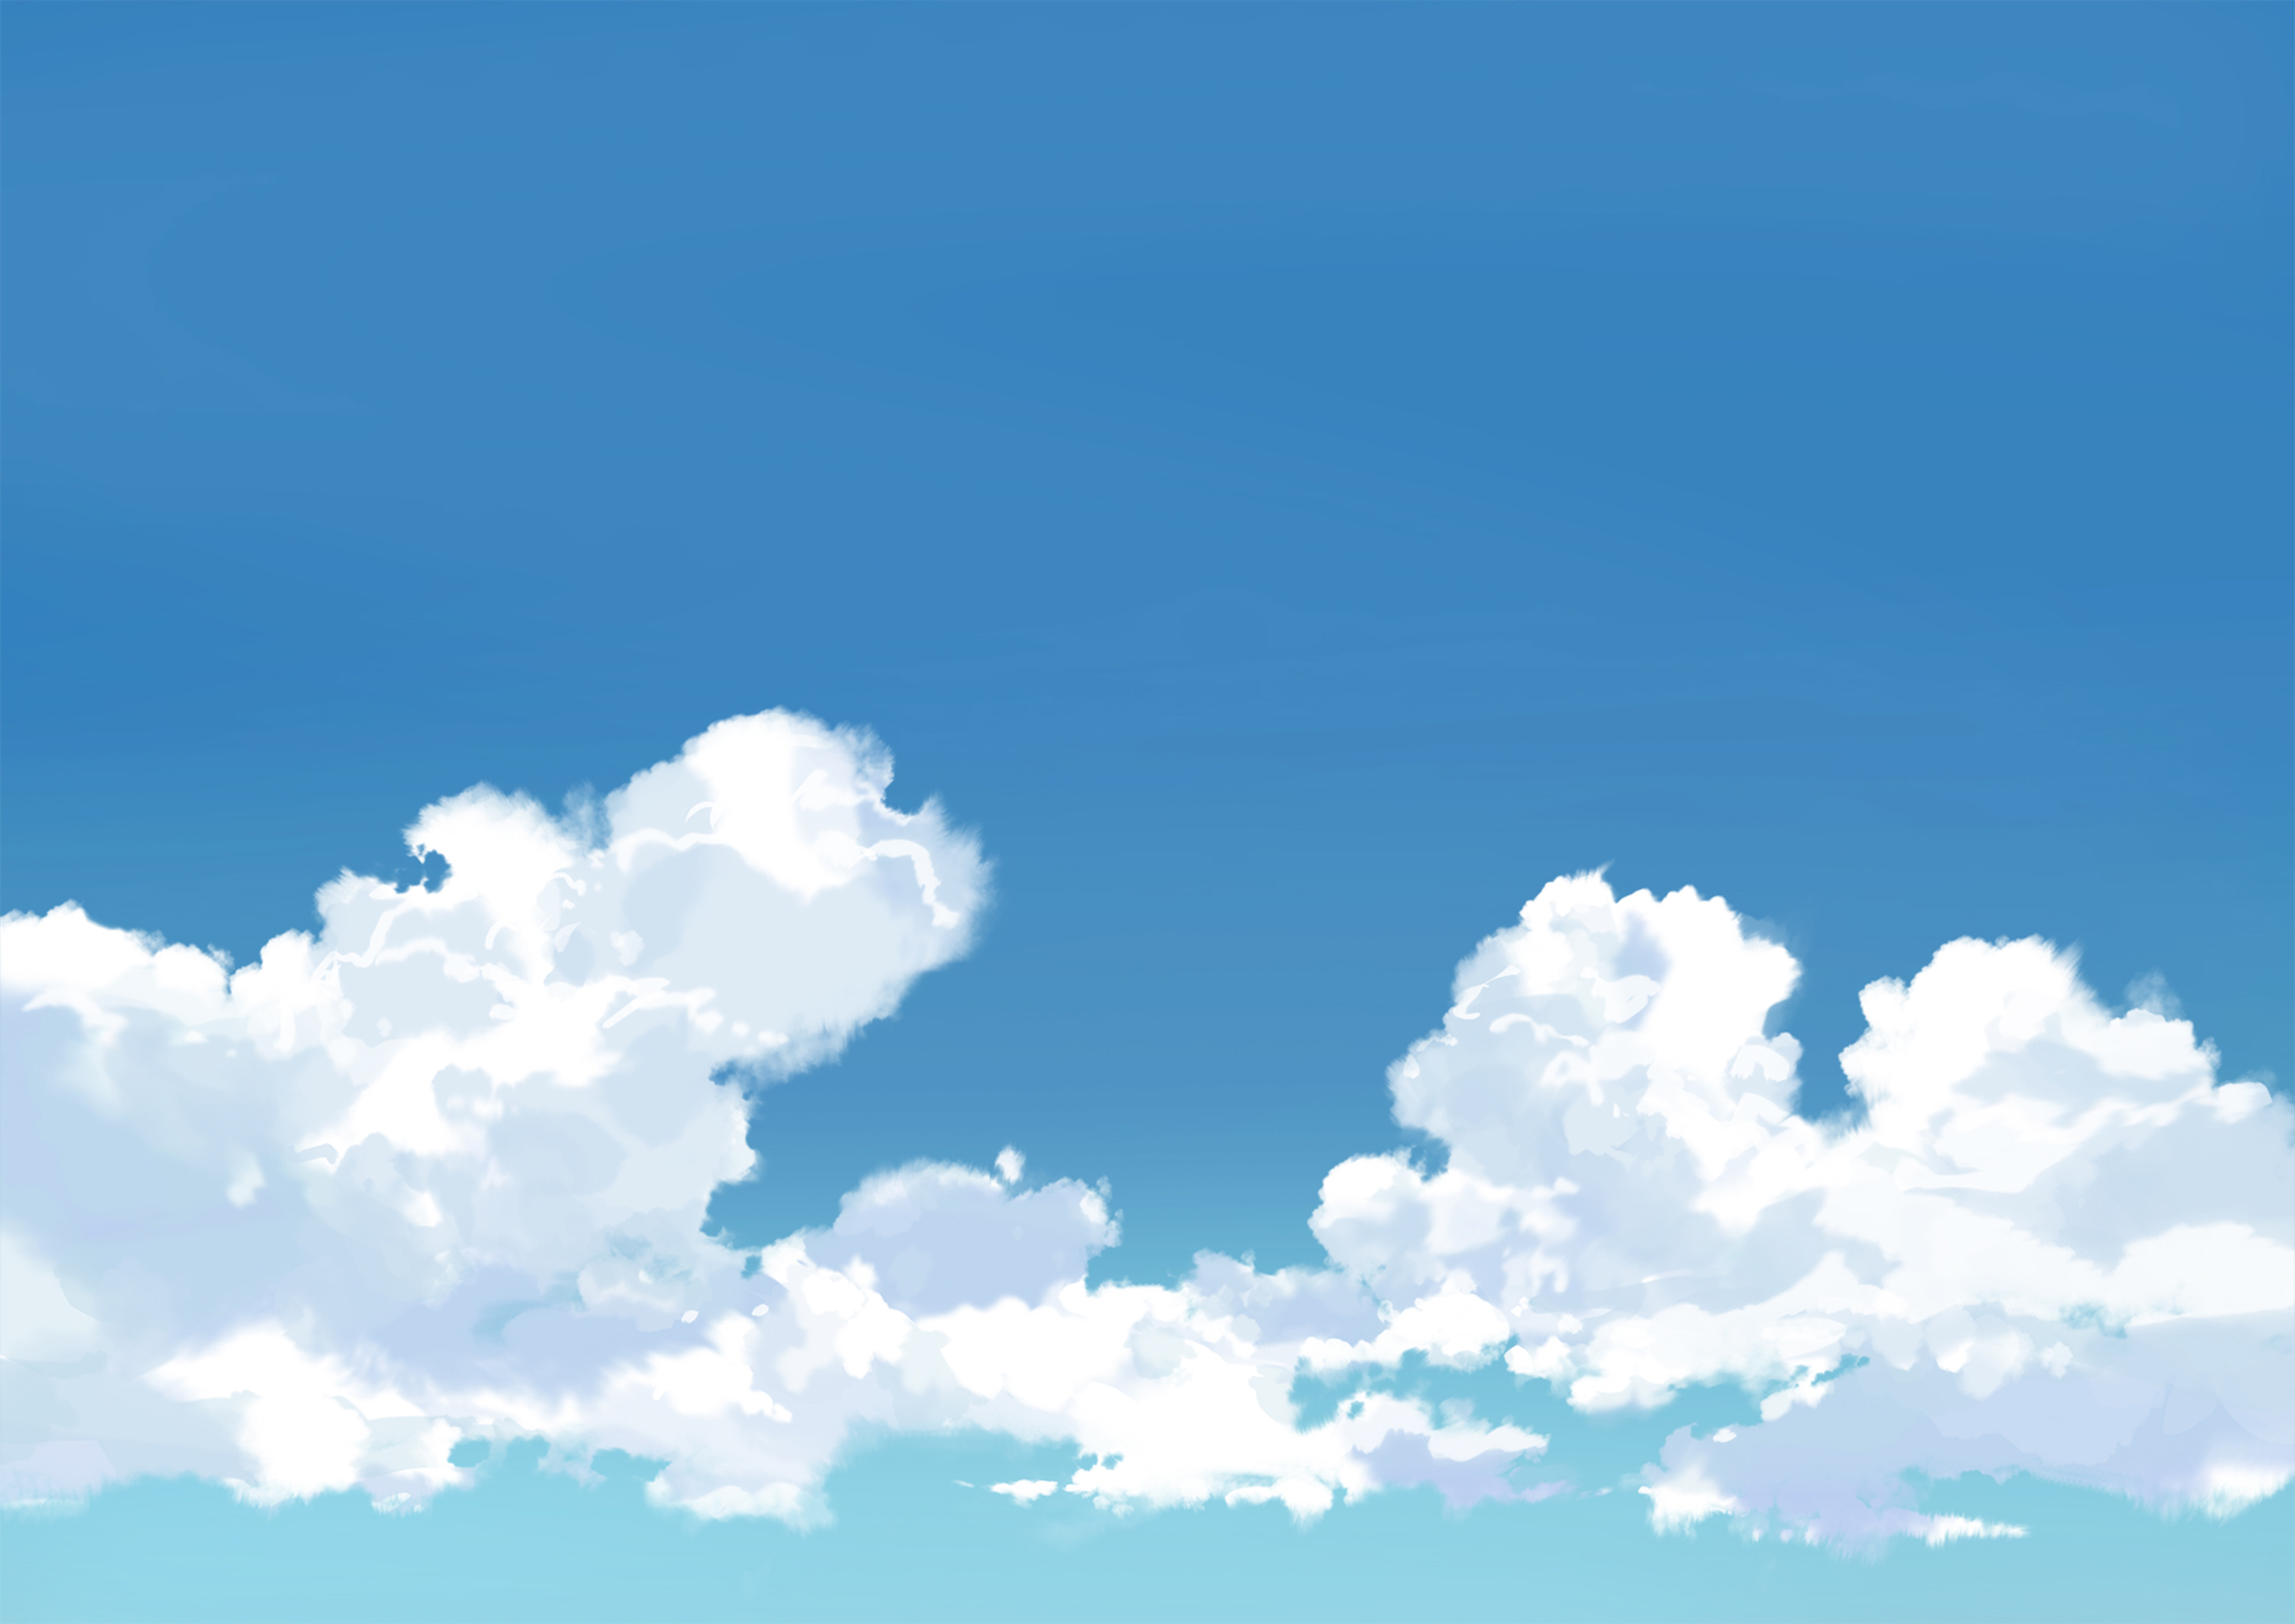 空・雲背景素材【psd】